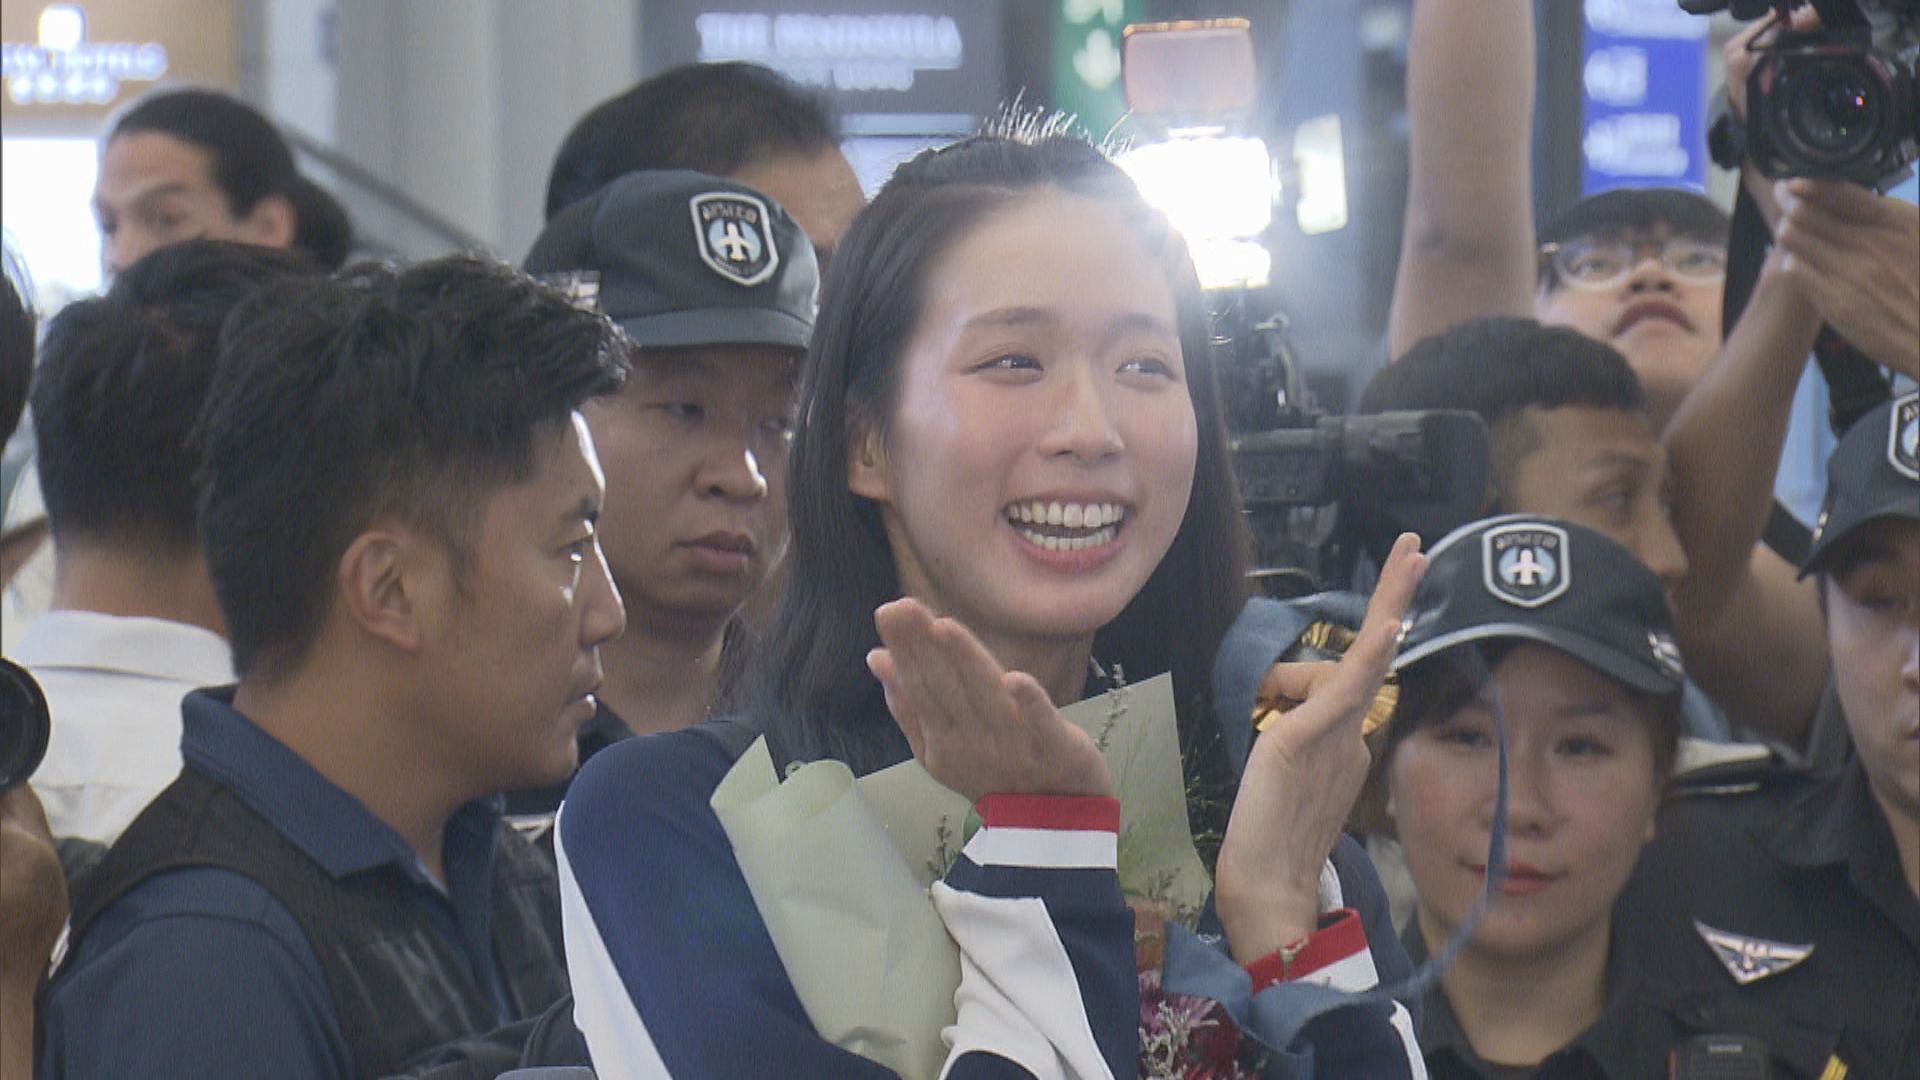 【劍后引退】江旻憓奧運奪金後宣布告別全職運動員生涯